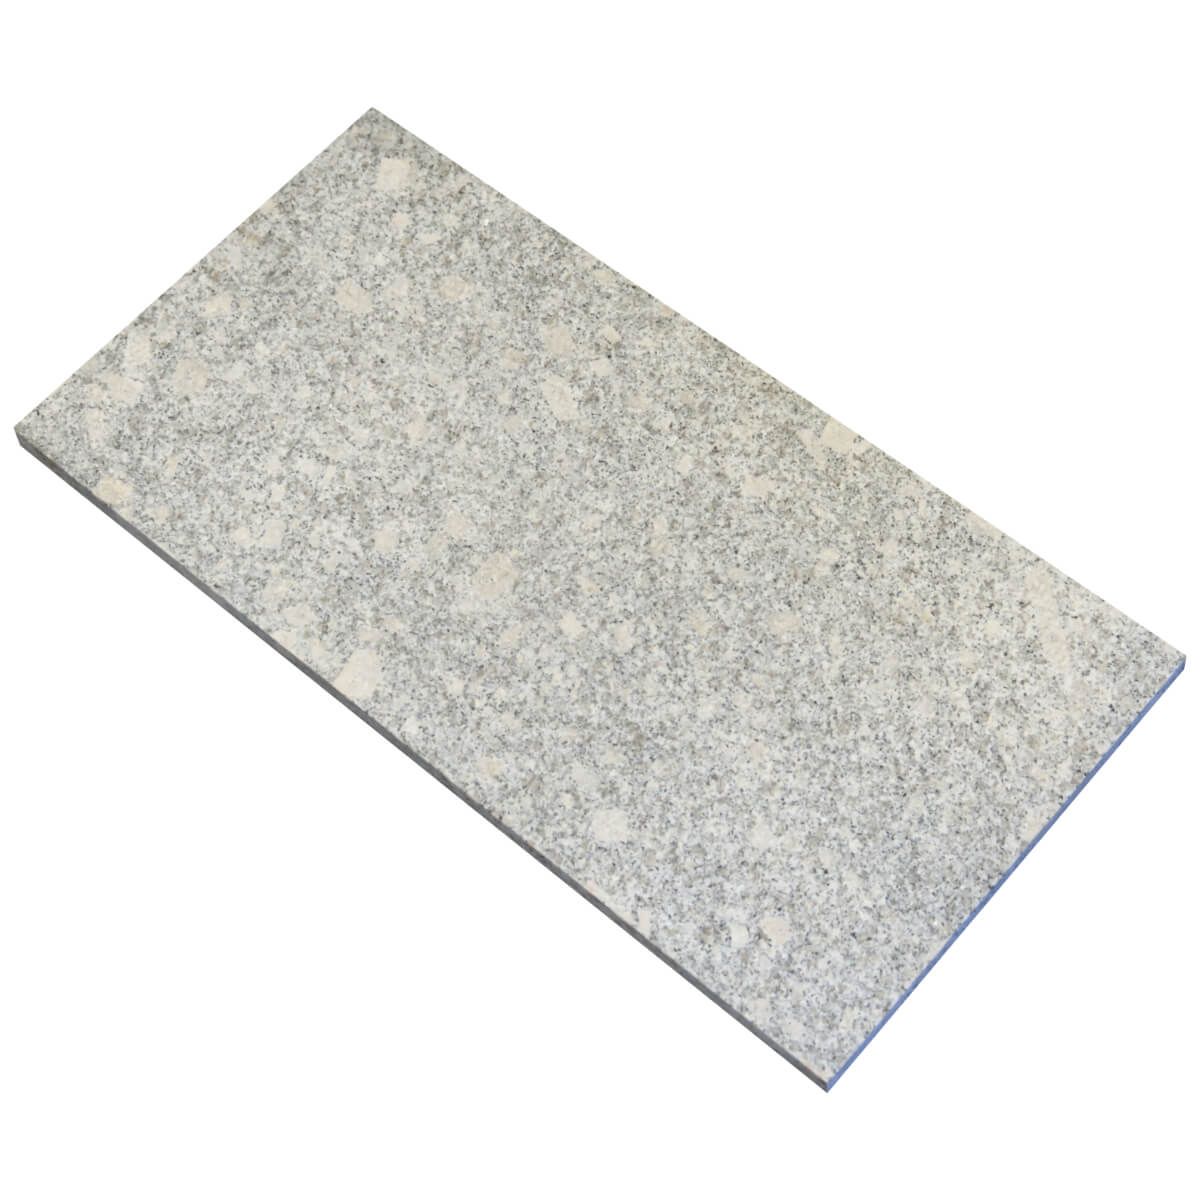 Płytki Granit G602 NEW płomieniowany 60x30x2 cm